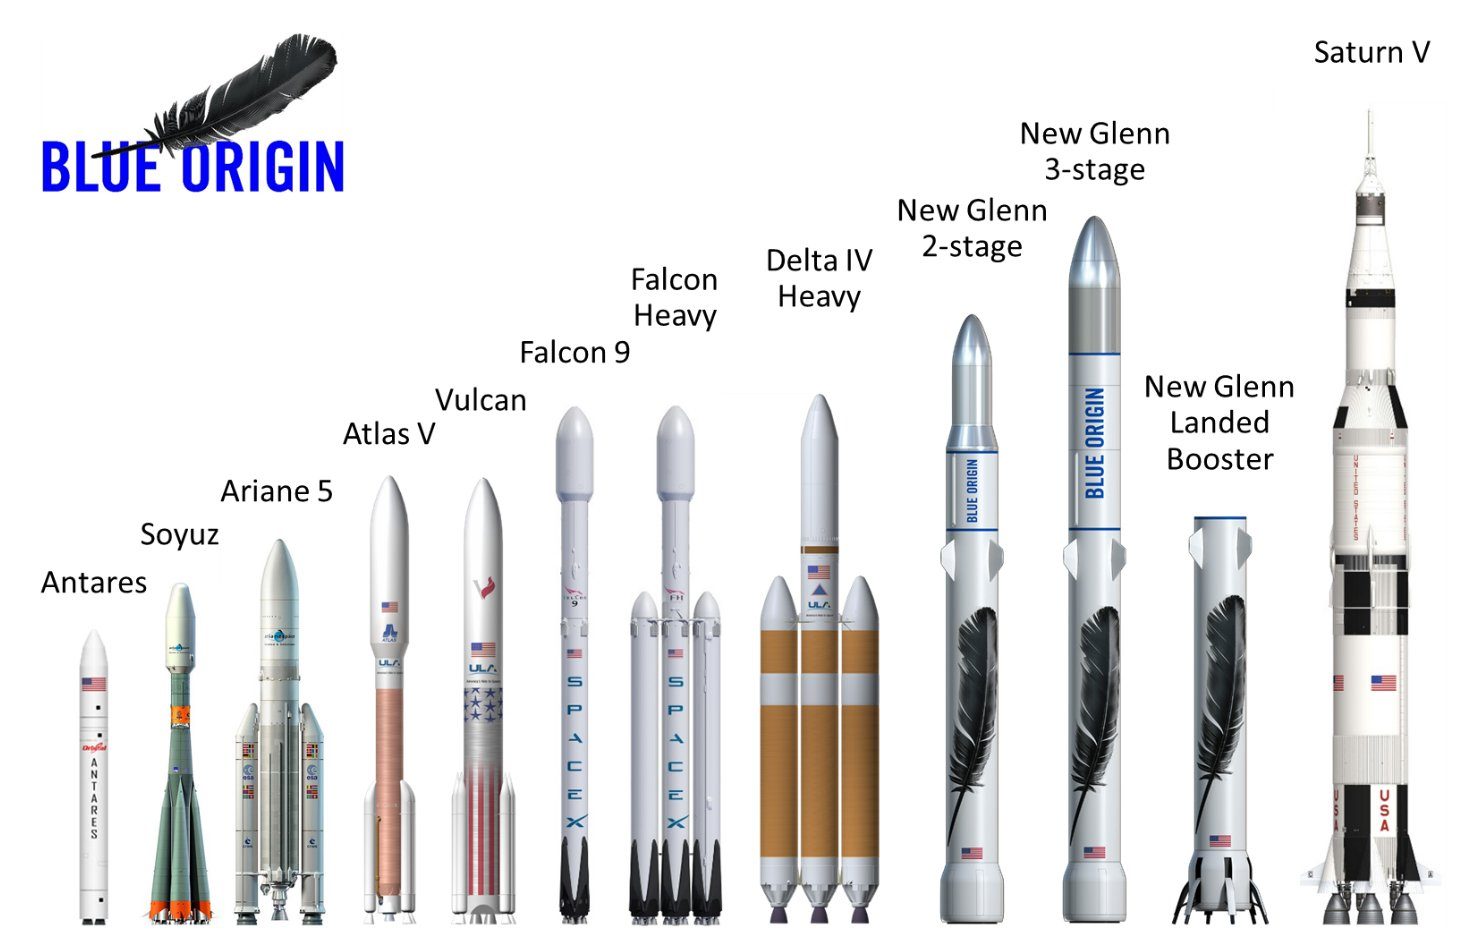 Amazon’s chief Jeff Bezos unveils new rocket design